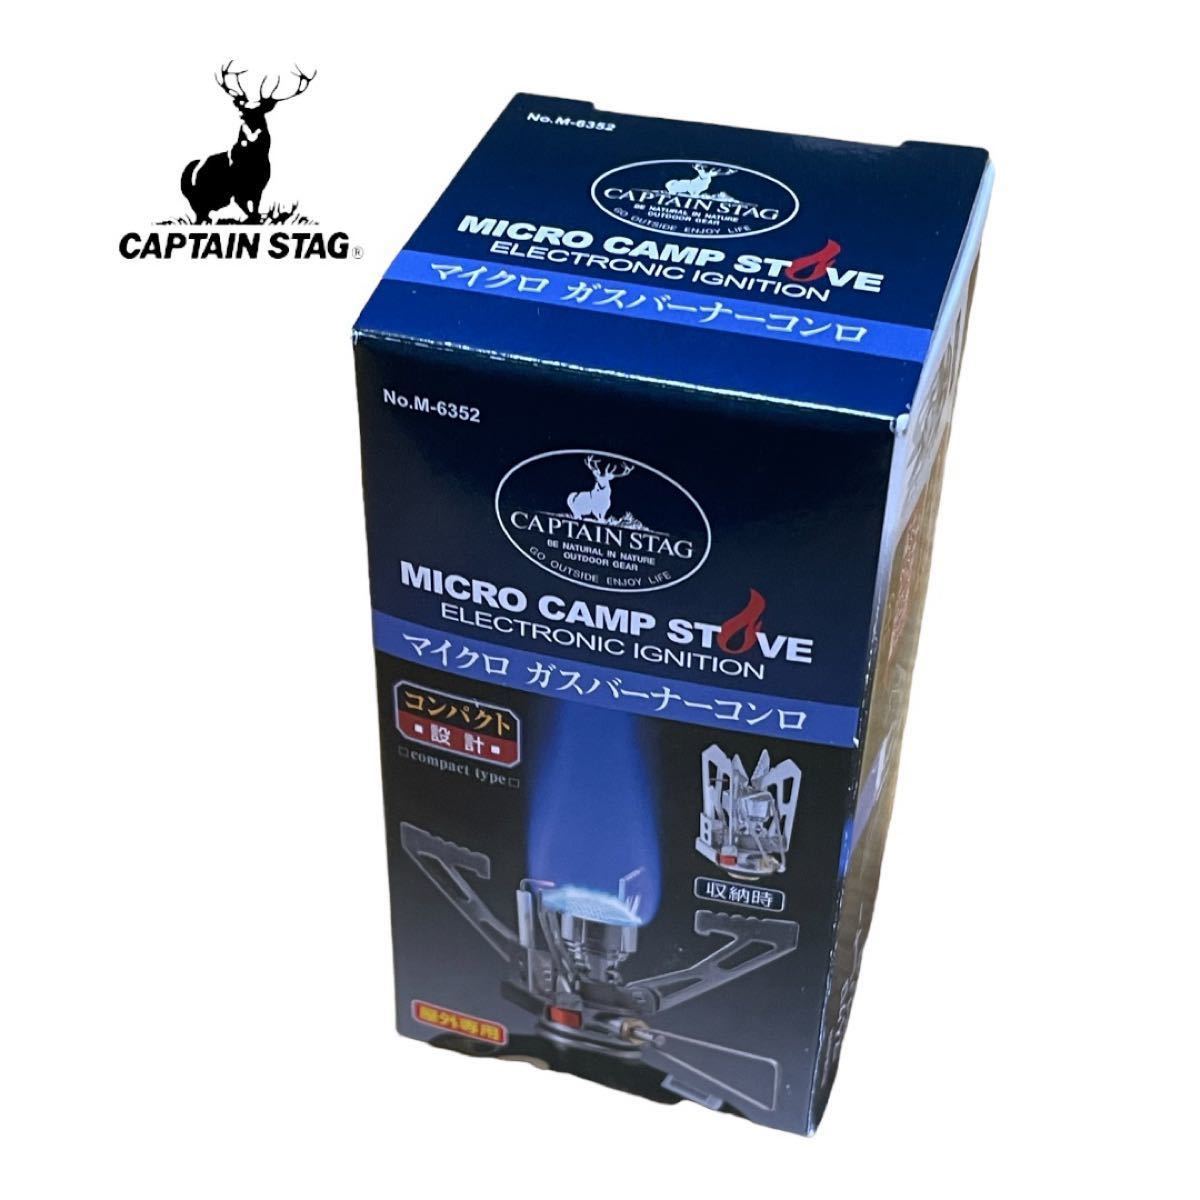 キャプテンスタッグ(CAPTAIN STAG) マイクロ ガスバーナーコンロ M-6352 新品